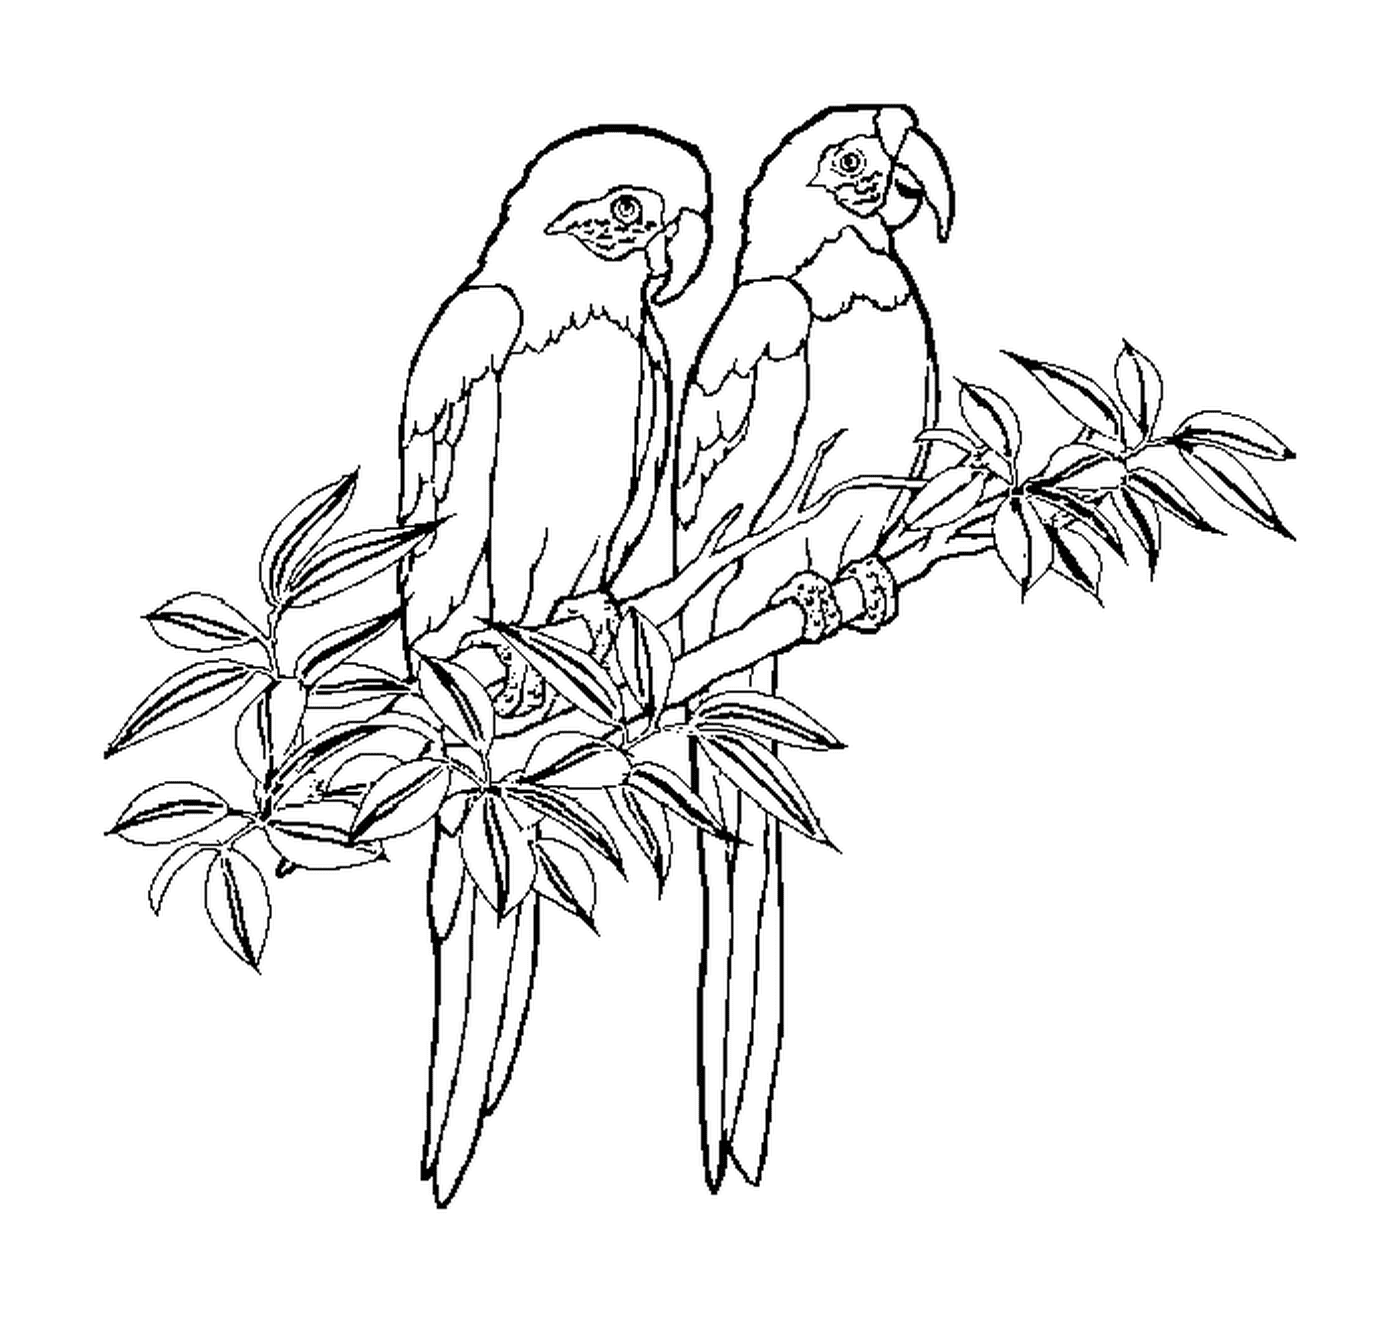  Два попугая схвачены вместе 